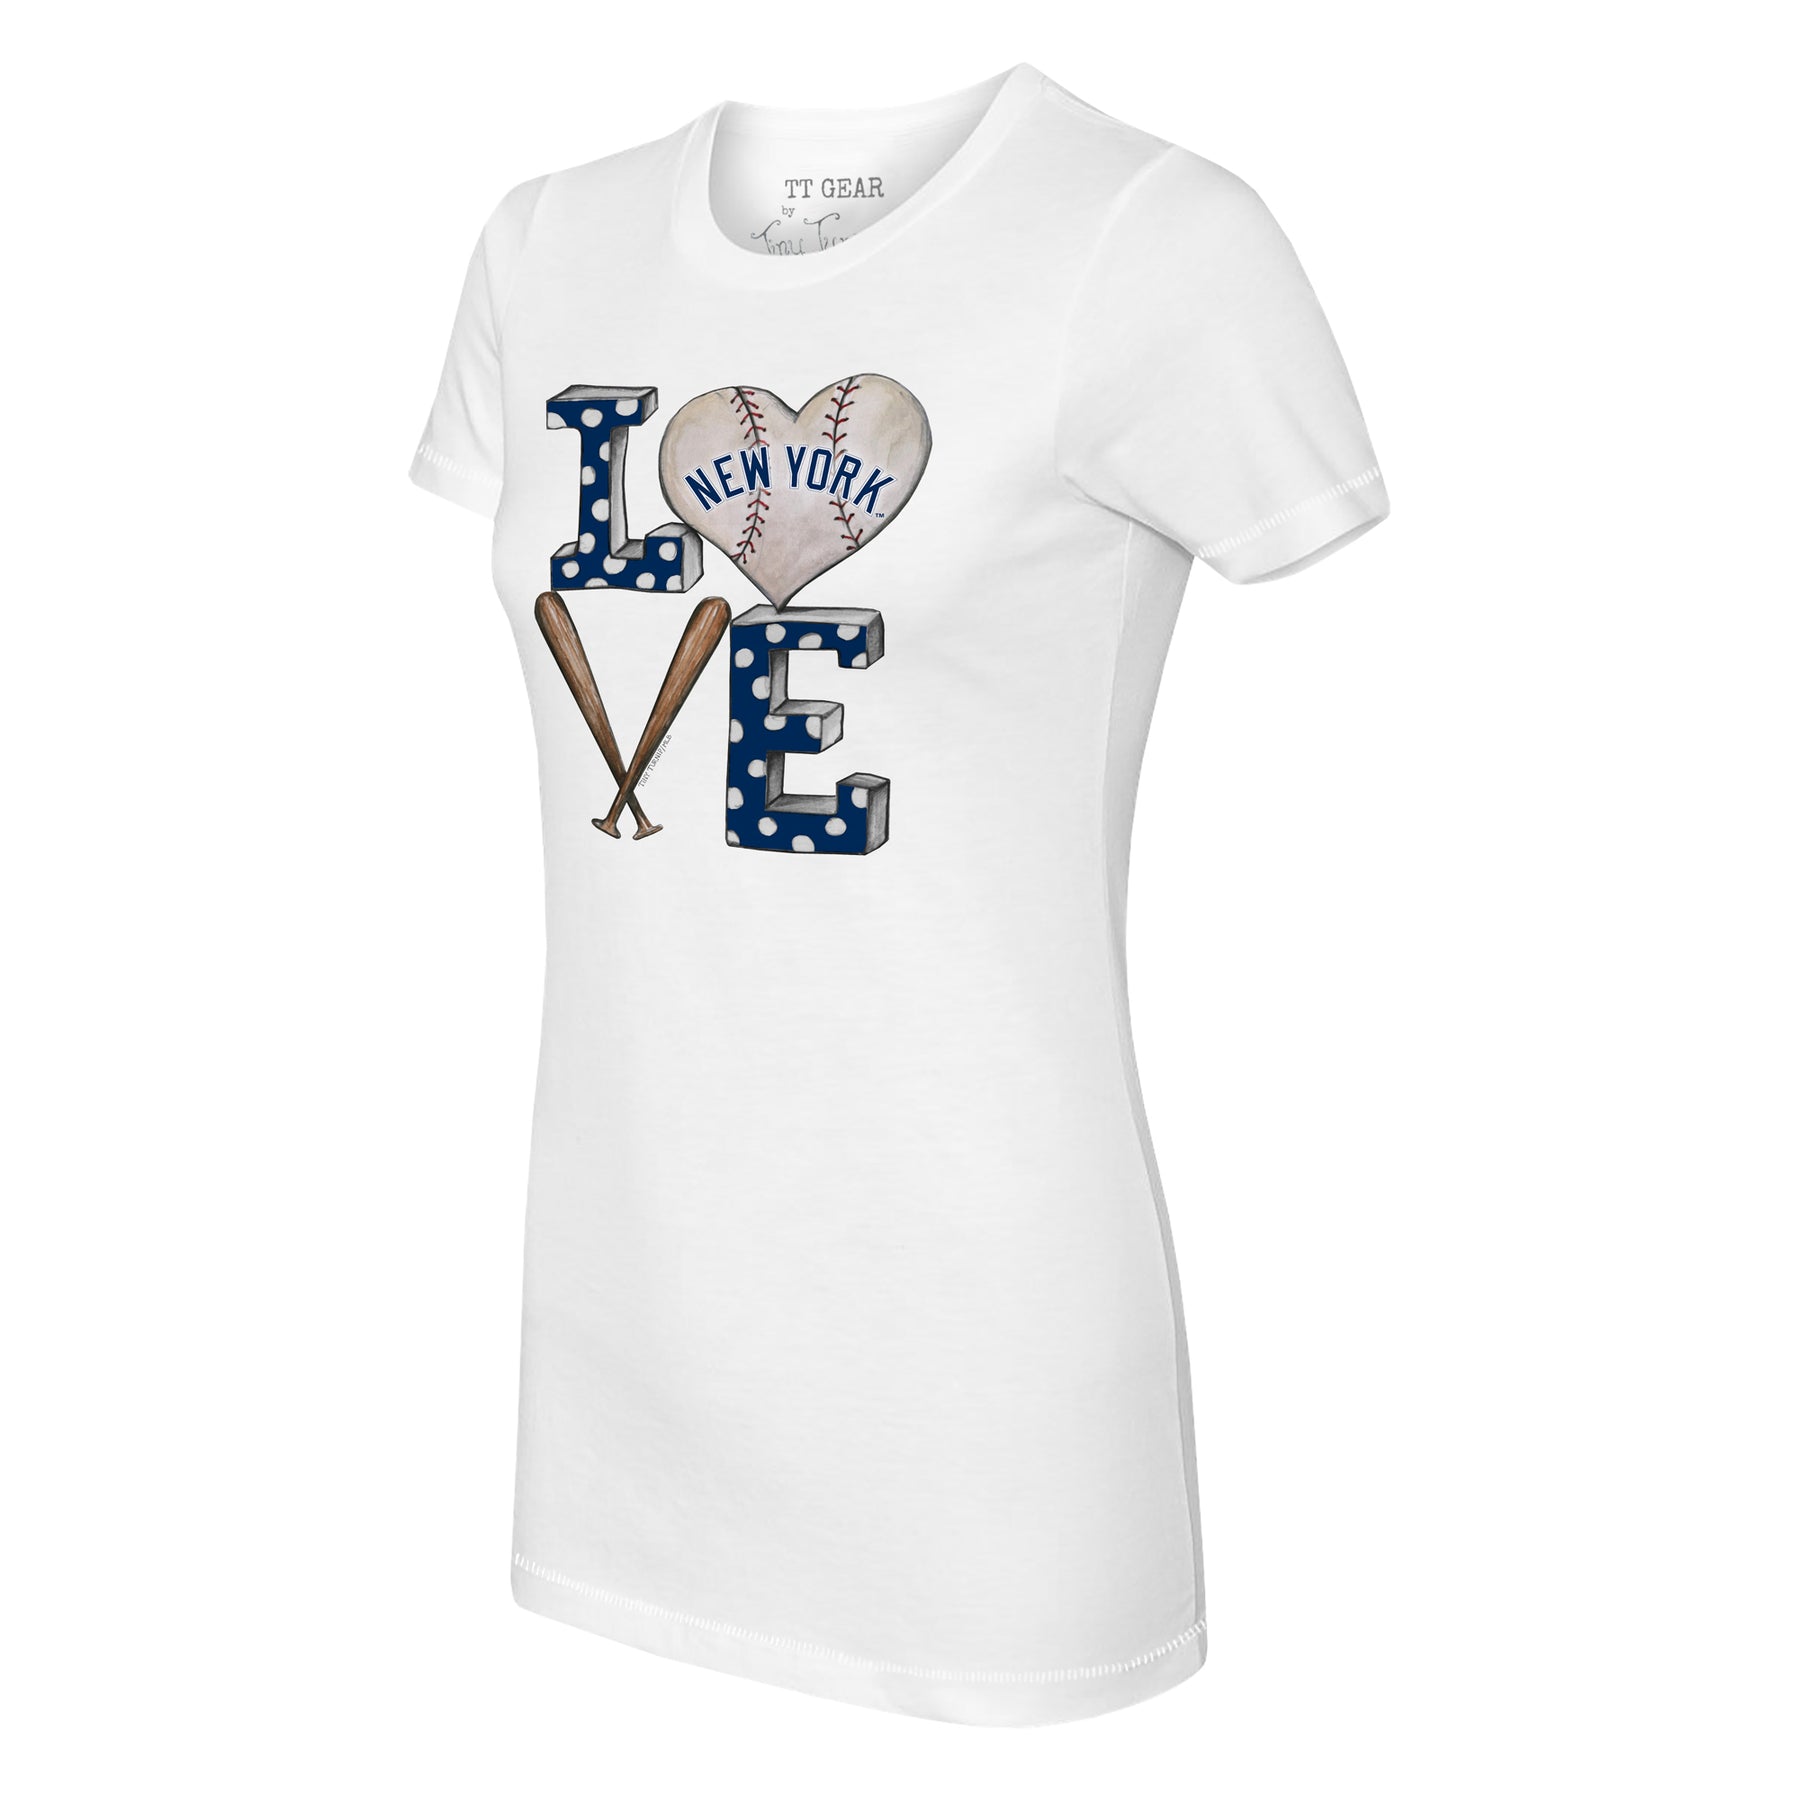 New York Yankees Triple Scoop Tee Shirt 4T / Navy Blue